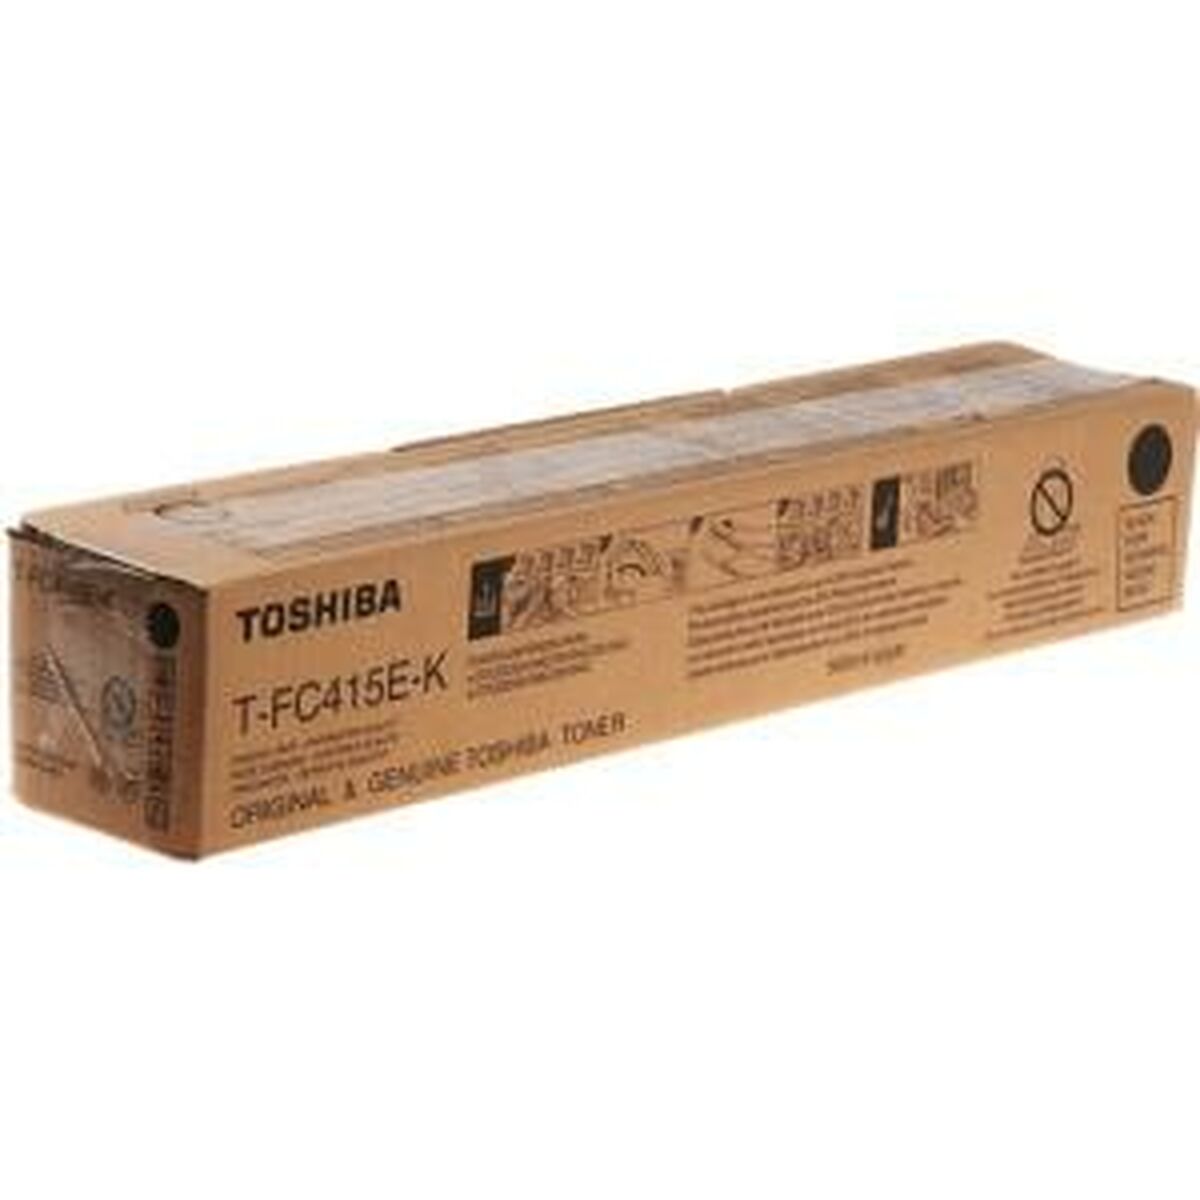 Toner Toshiba T-FC415E-K Noir